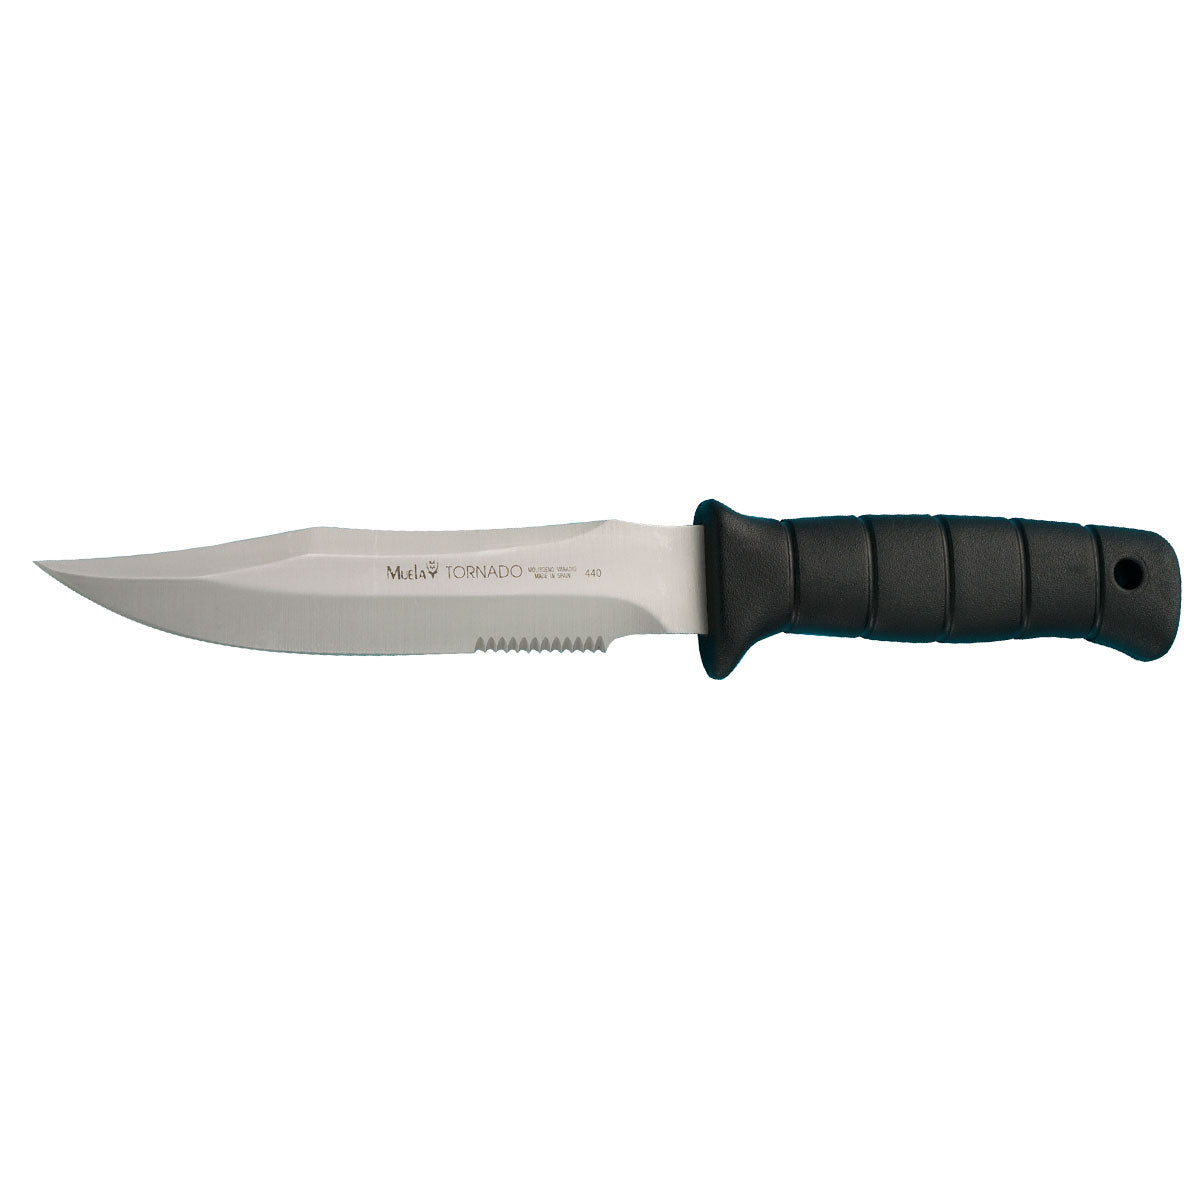 Muela | TORNADO Knife - 18W - Rubber Handle